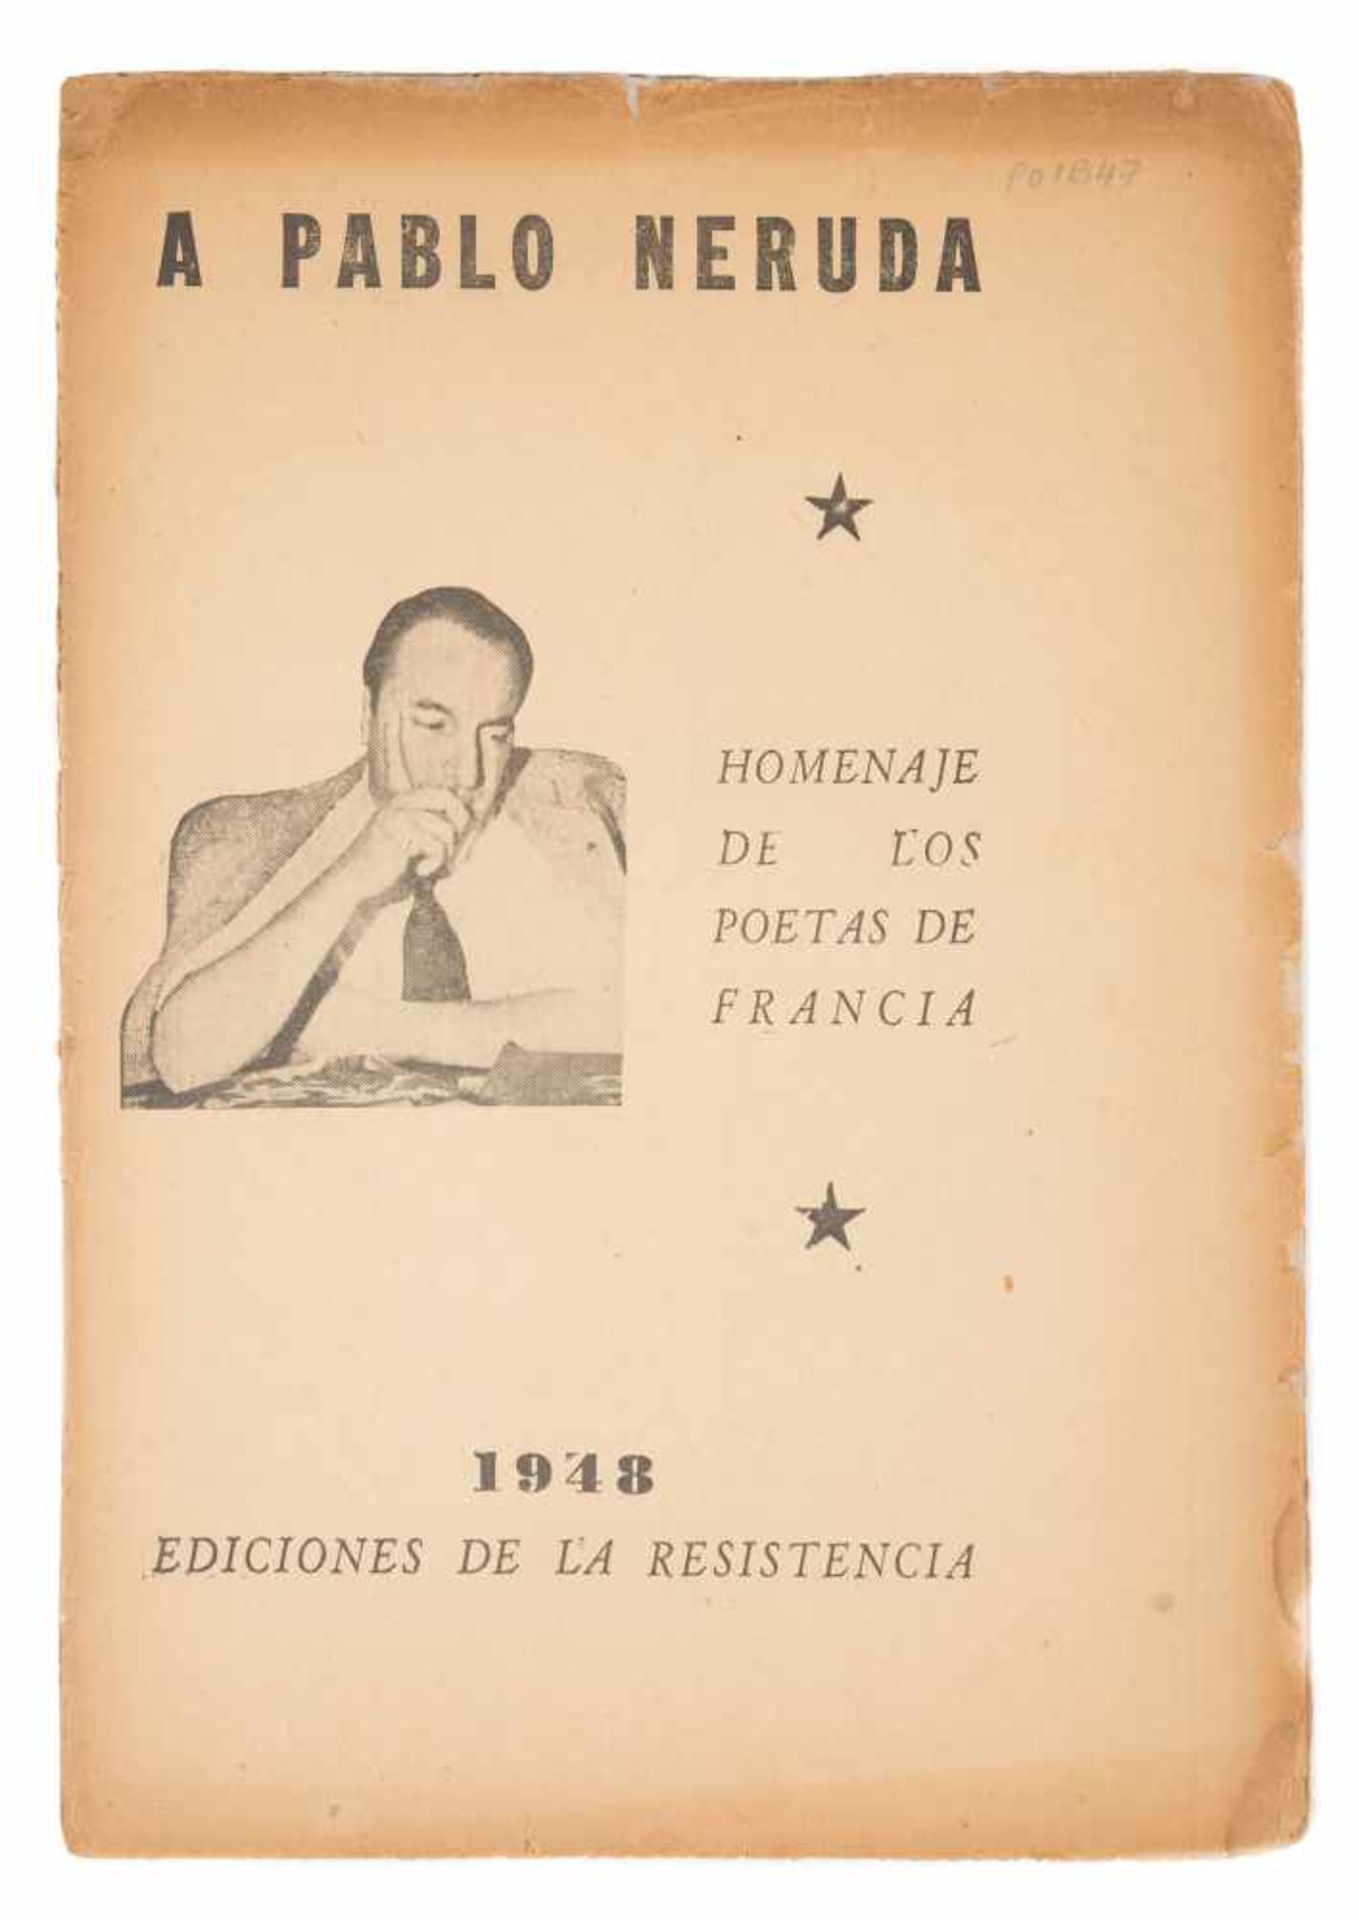 "A Pablo Neruda : homenaje de los poetas de Francia". (To Pablo Neruda: homage from the poets of